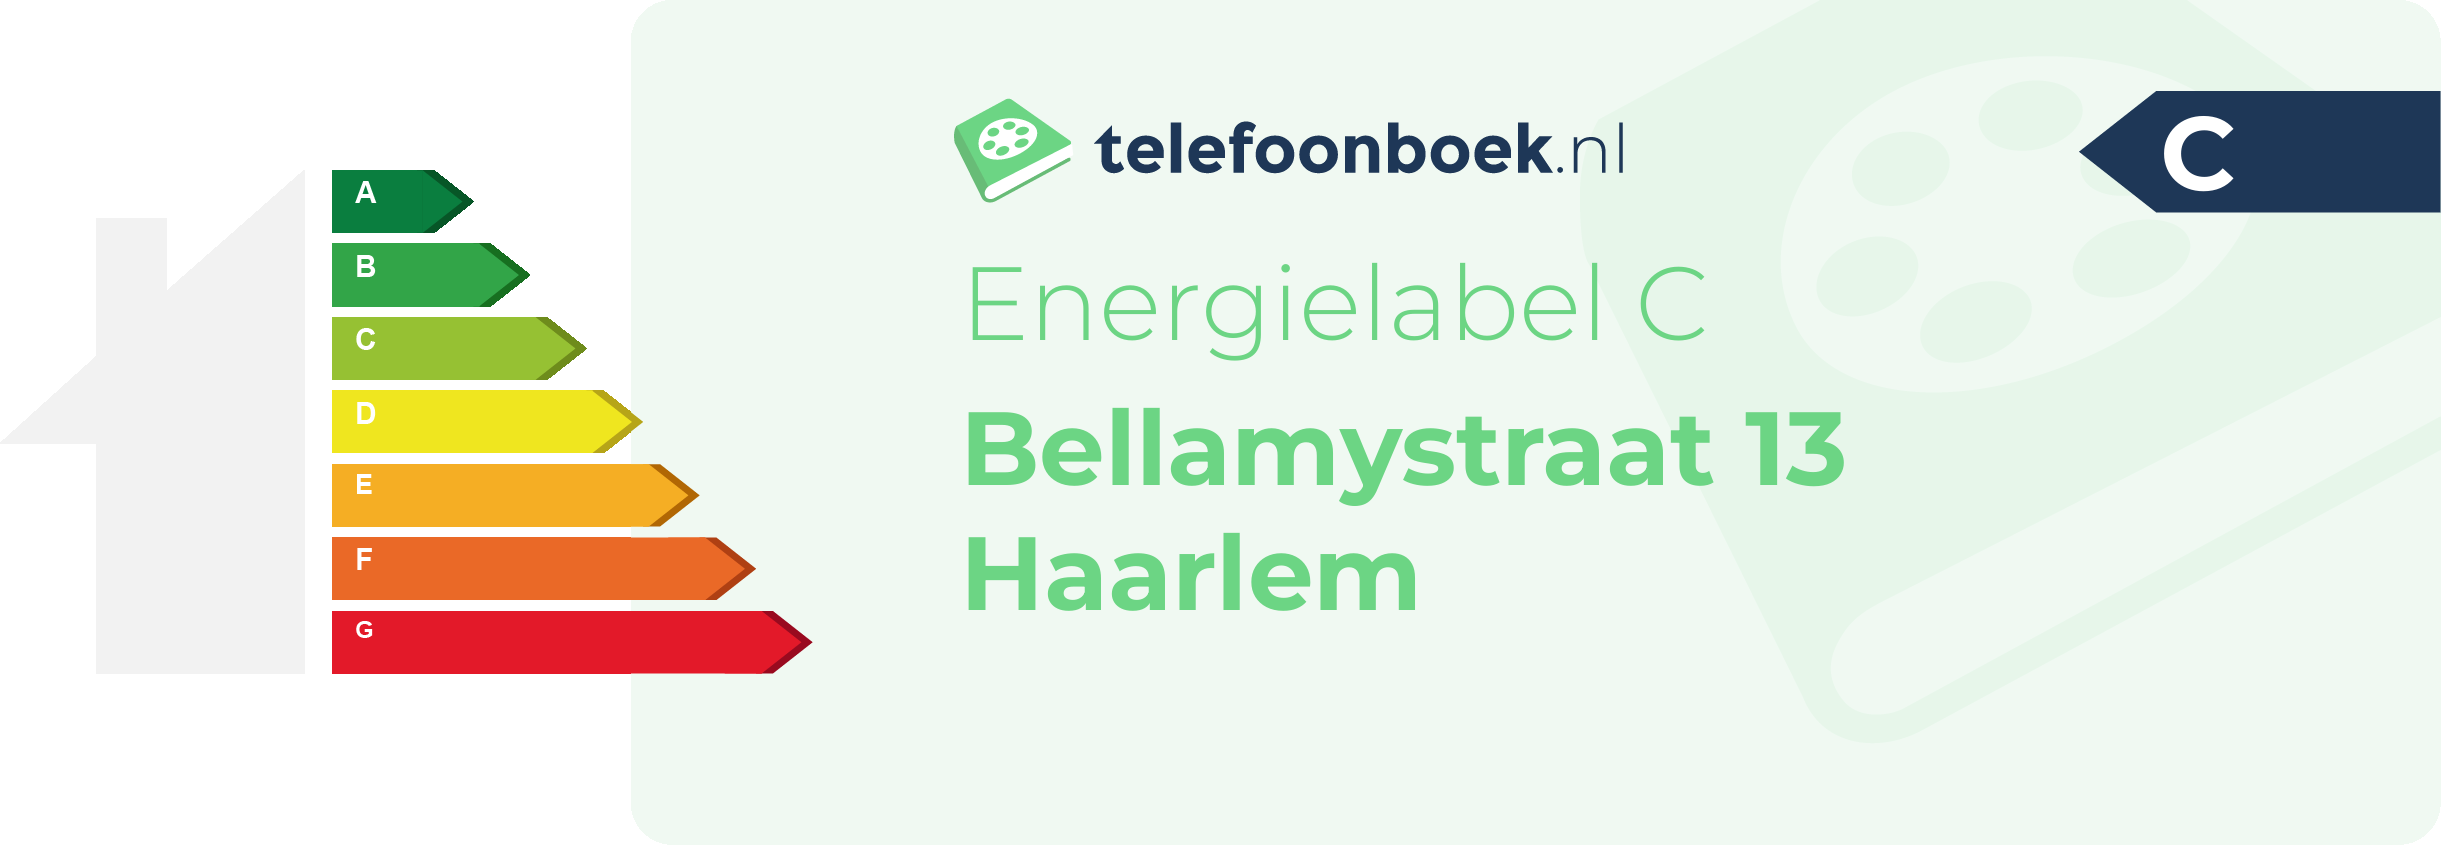 Energielabel Bellamystraat 13 Haarlem